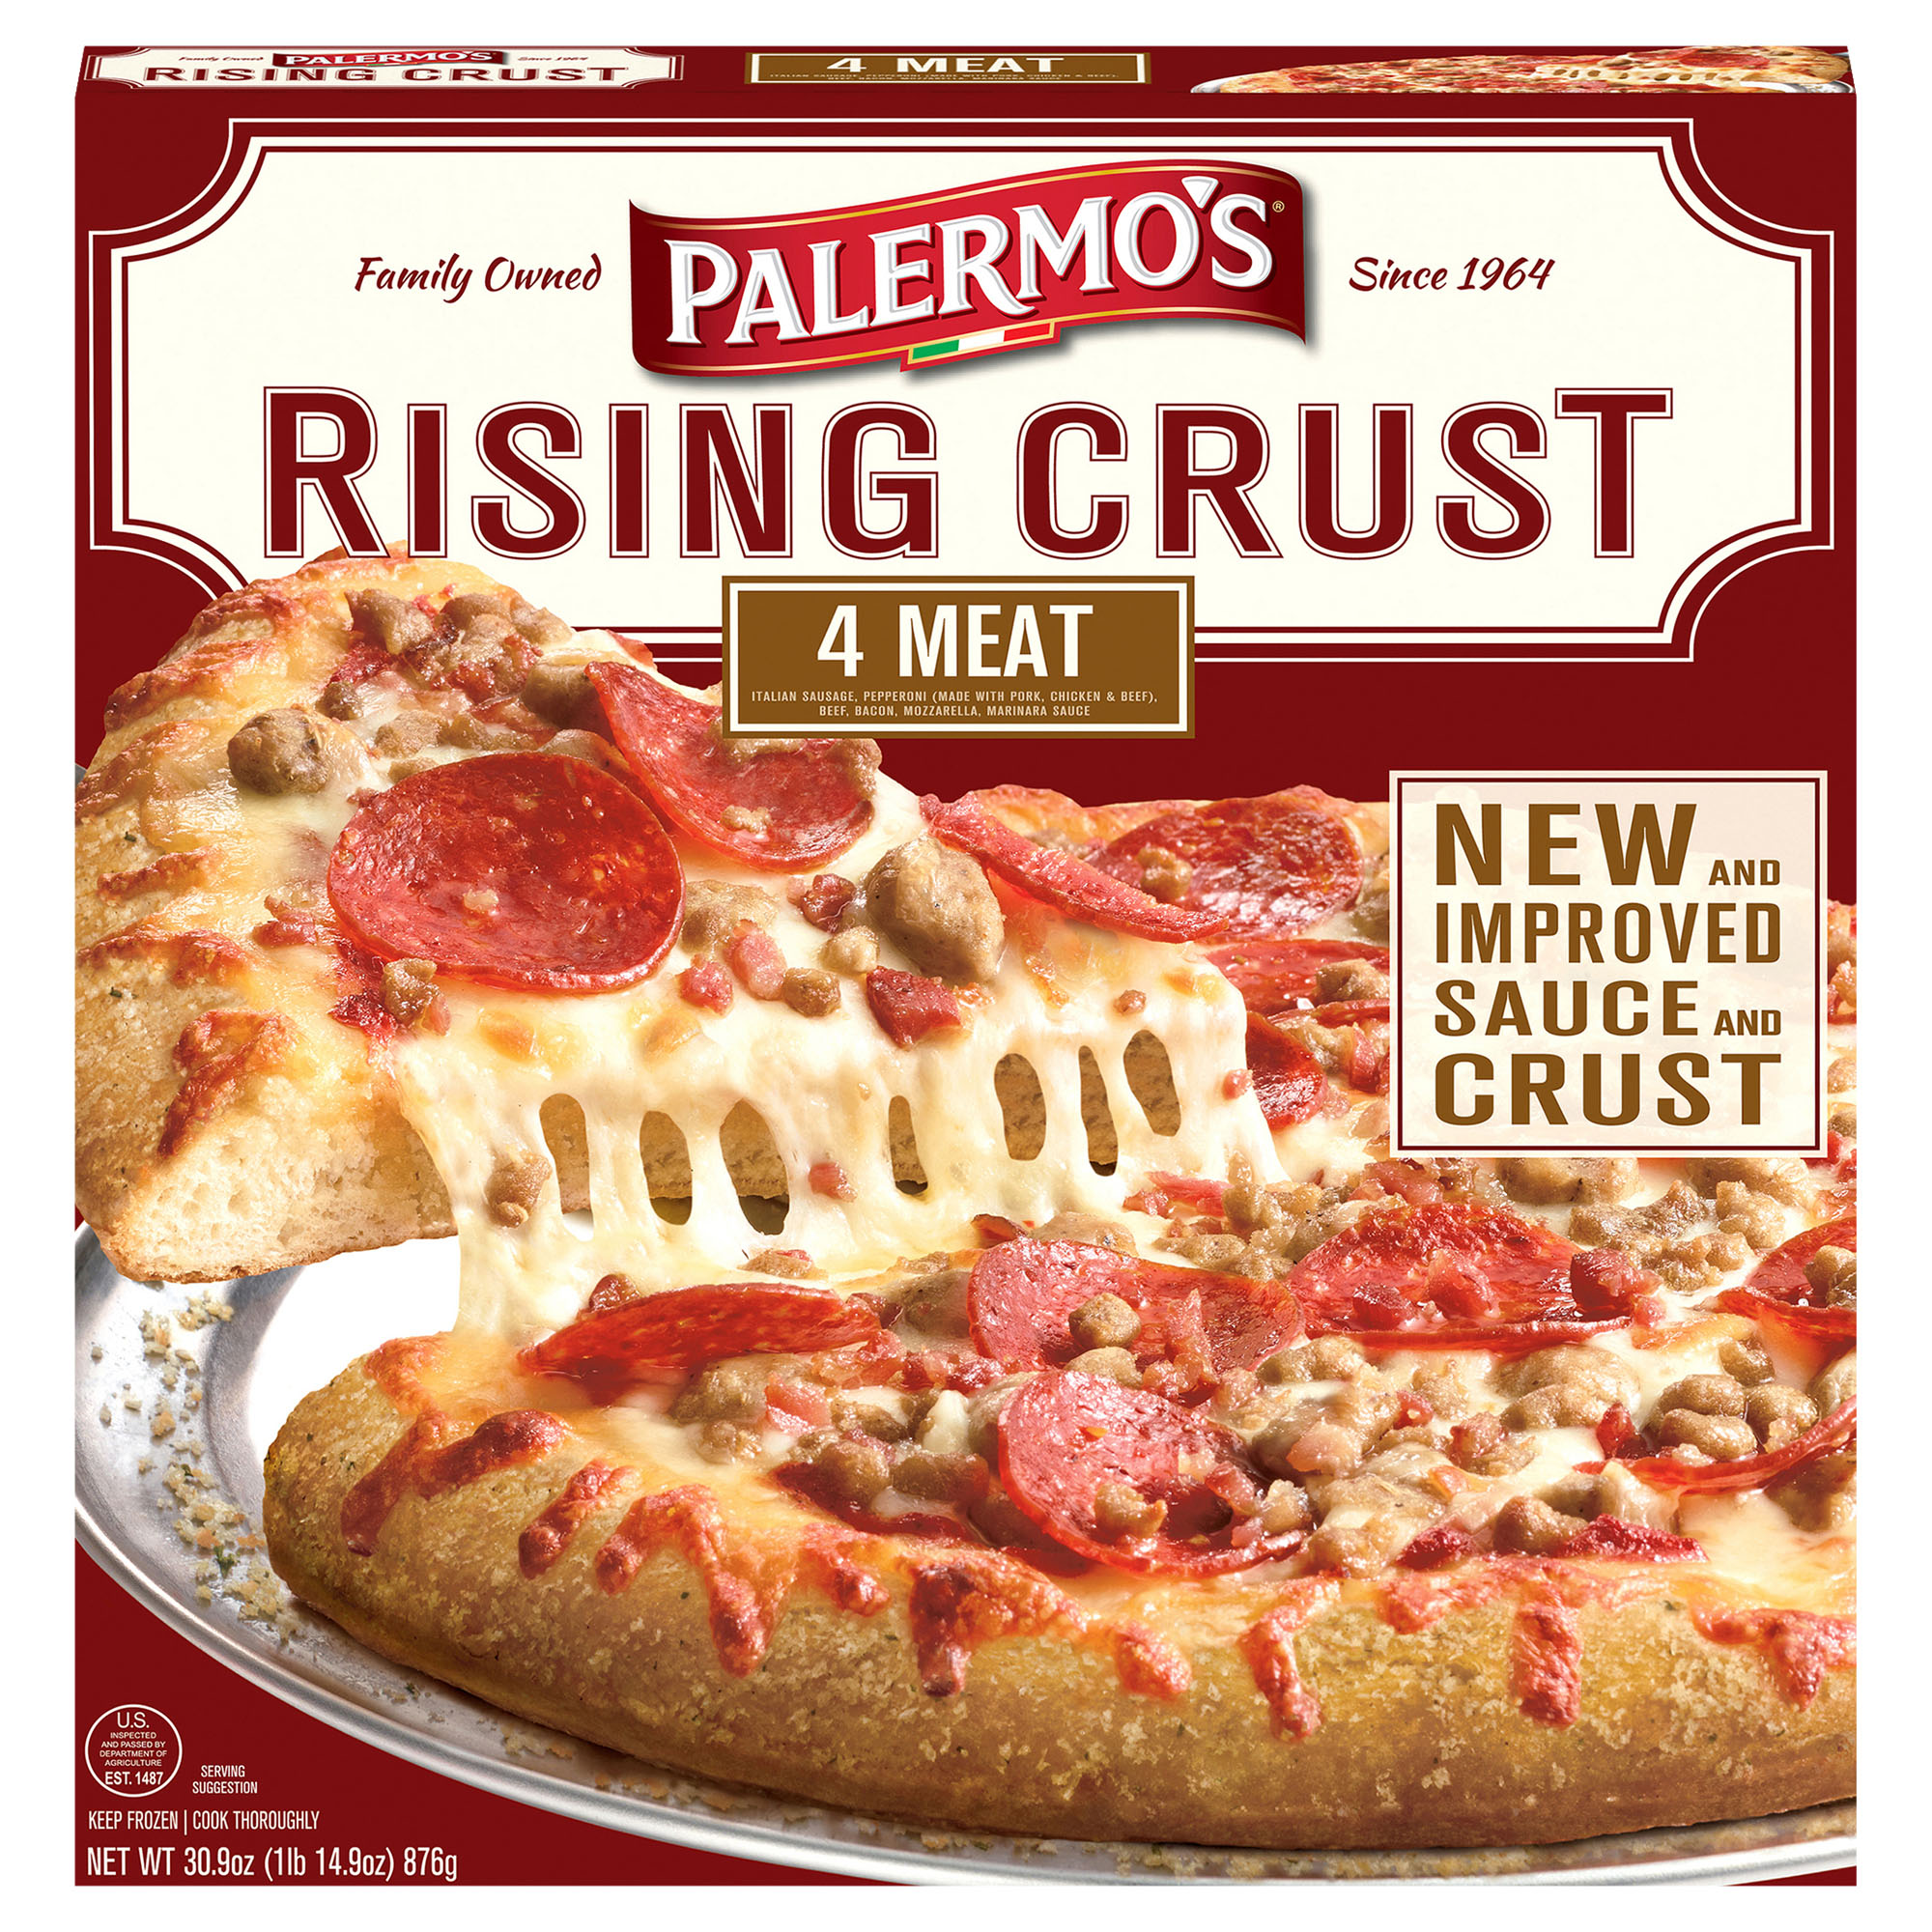 Palermo's Rising Crust 4 Meat 7 units per case 30.9 oz